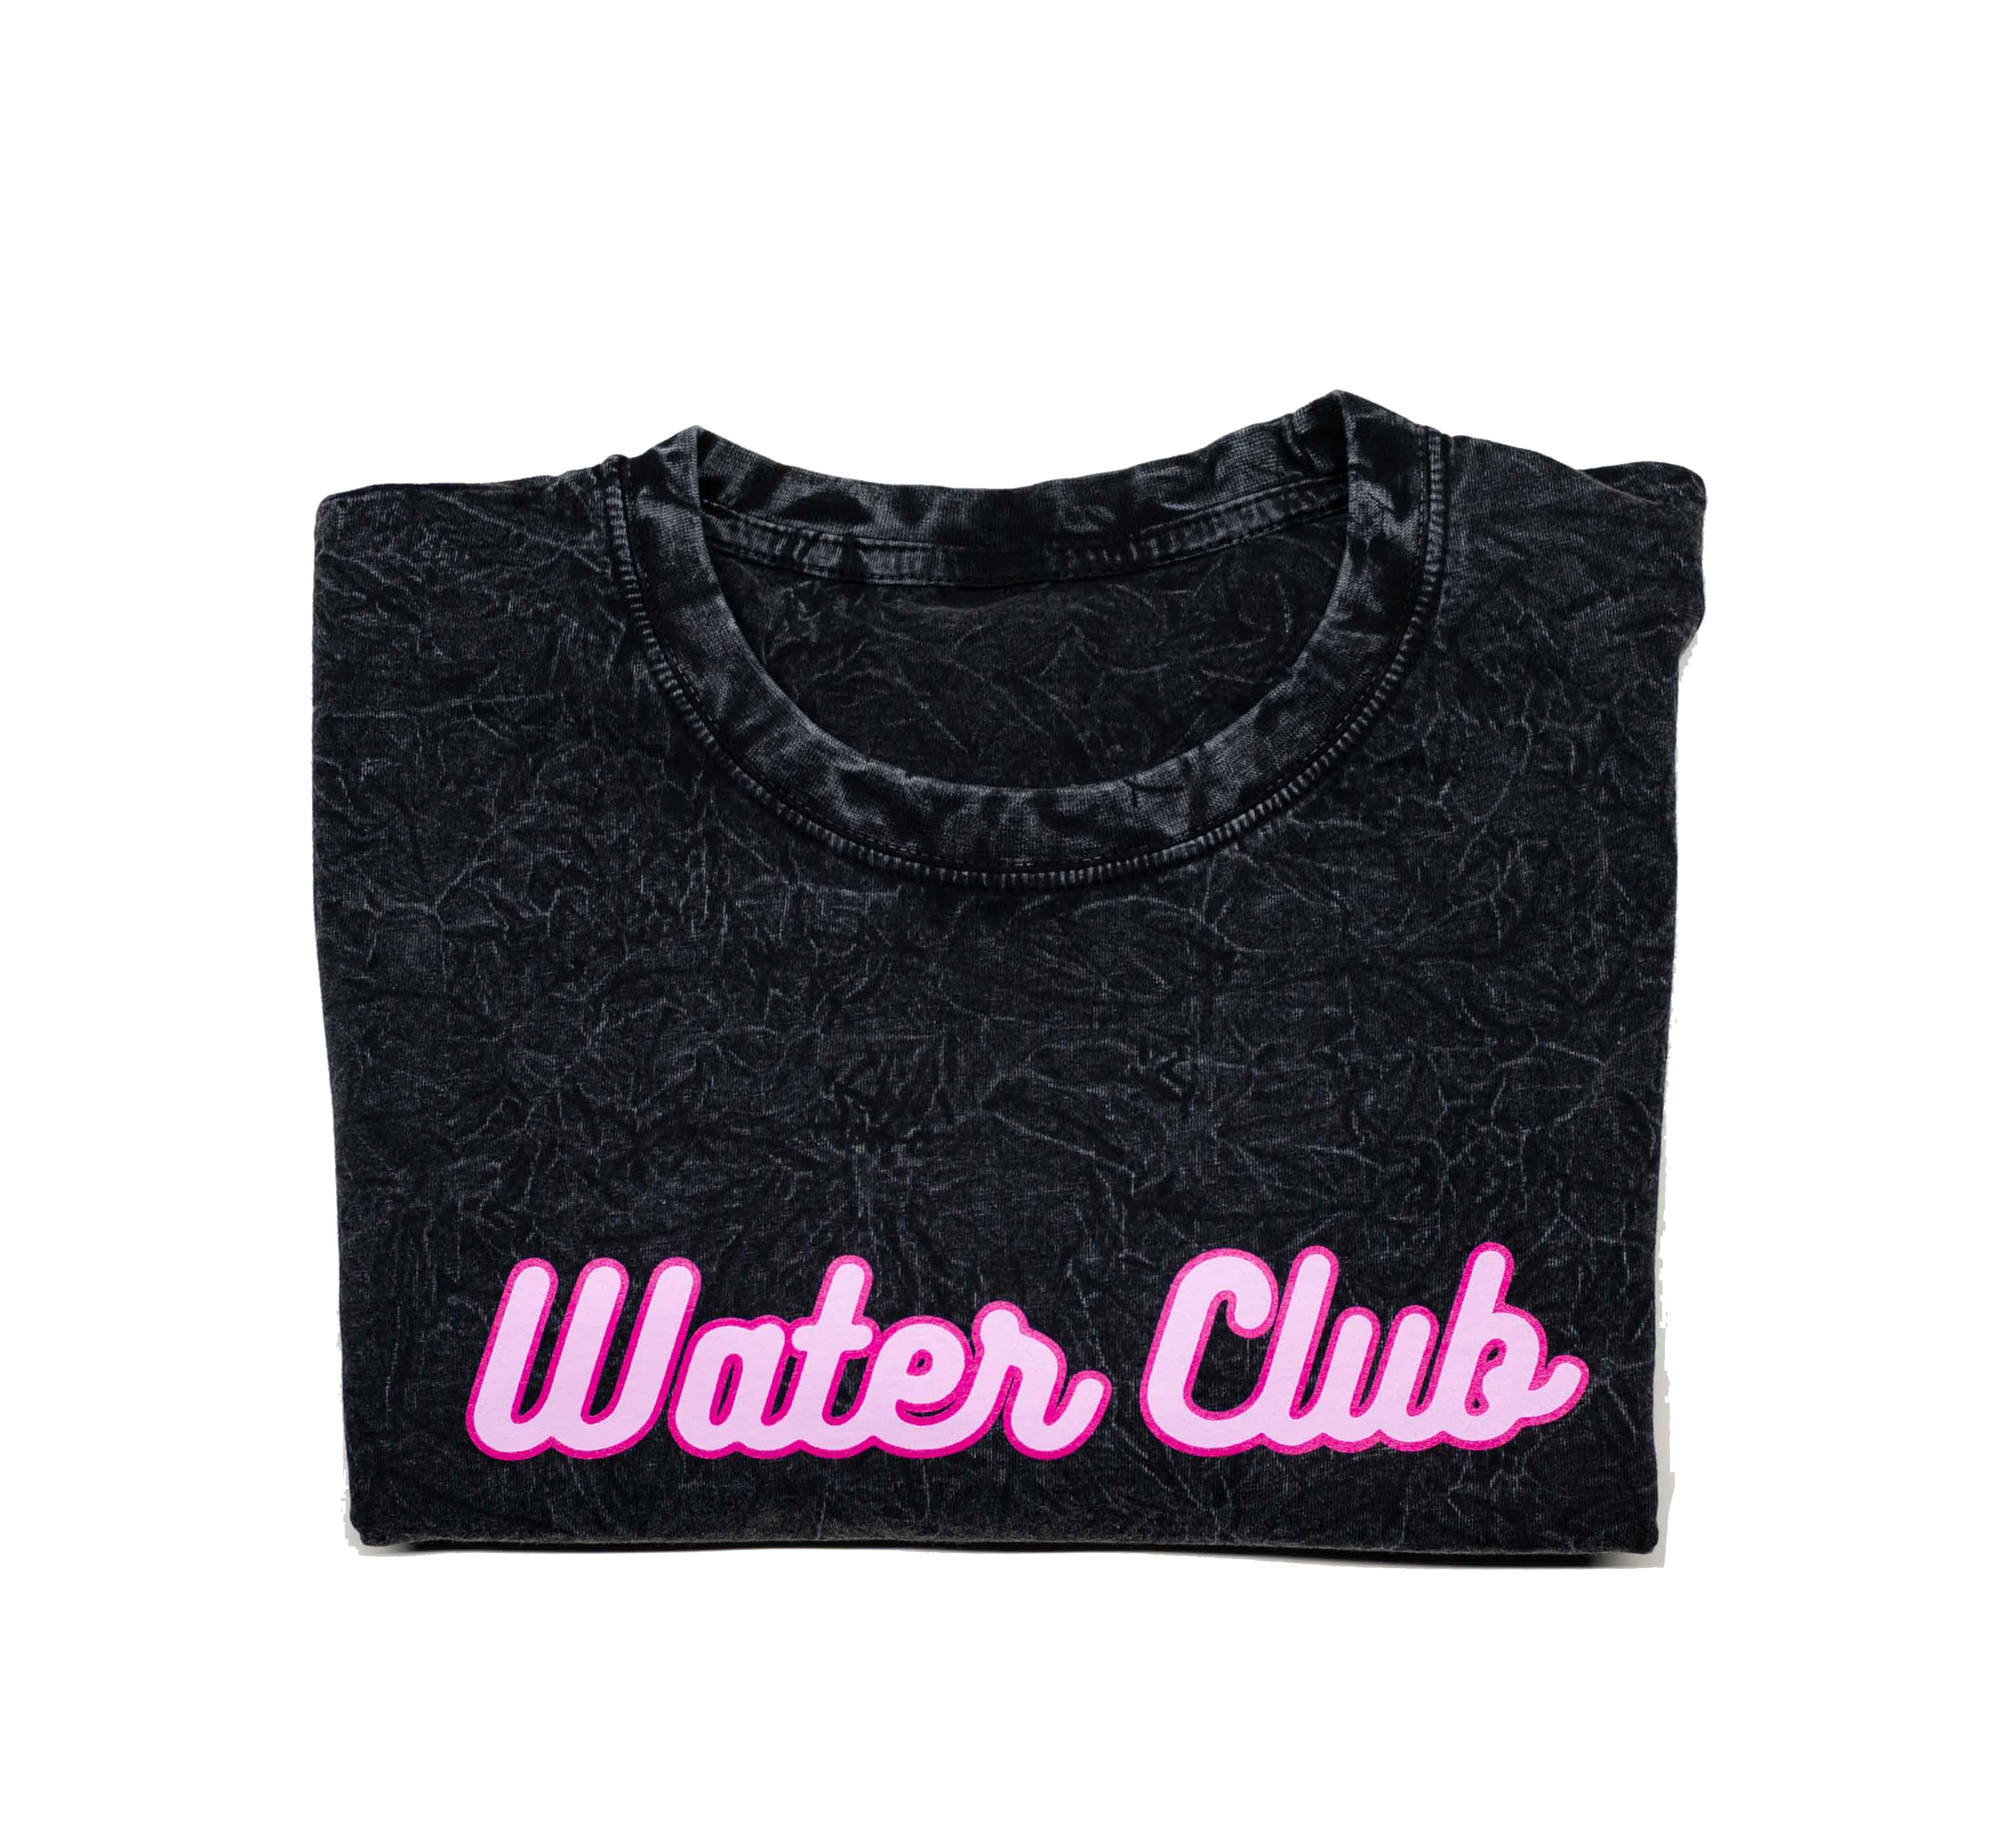 Water Club Tee